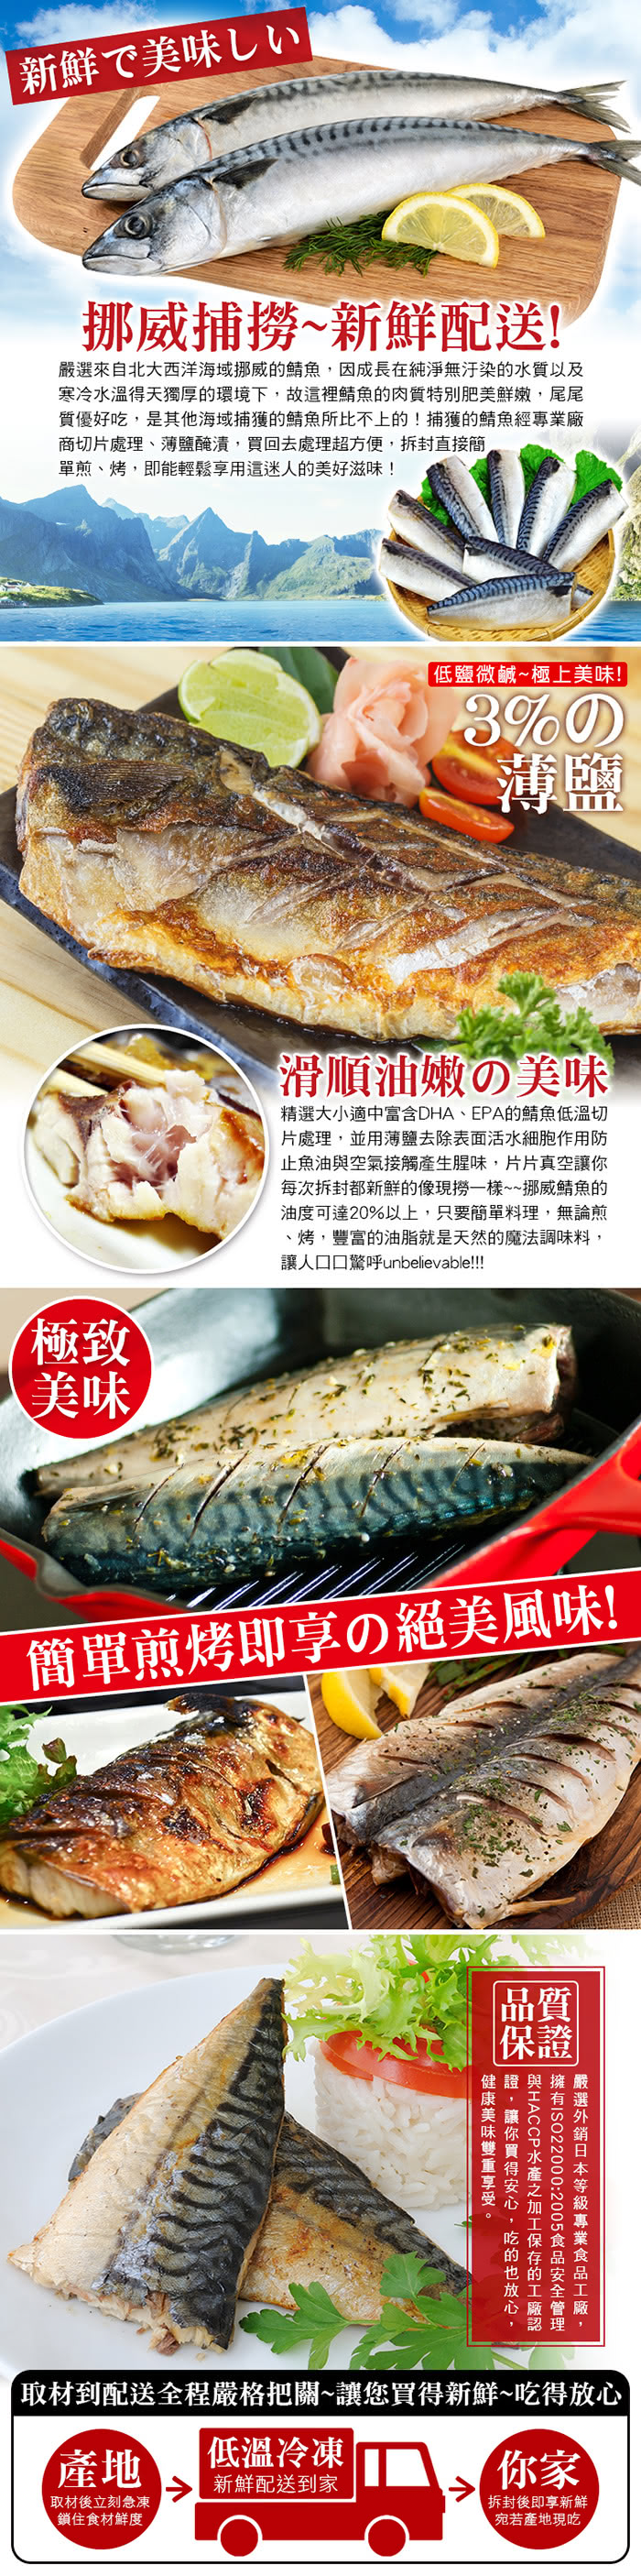 【賀鮮生】超厚片挪威薄鹽鯖魚12片(190g/片)